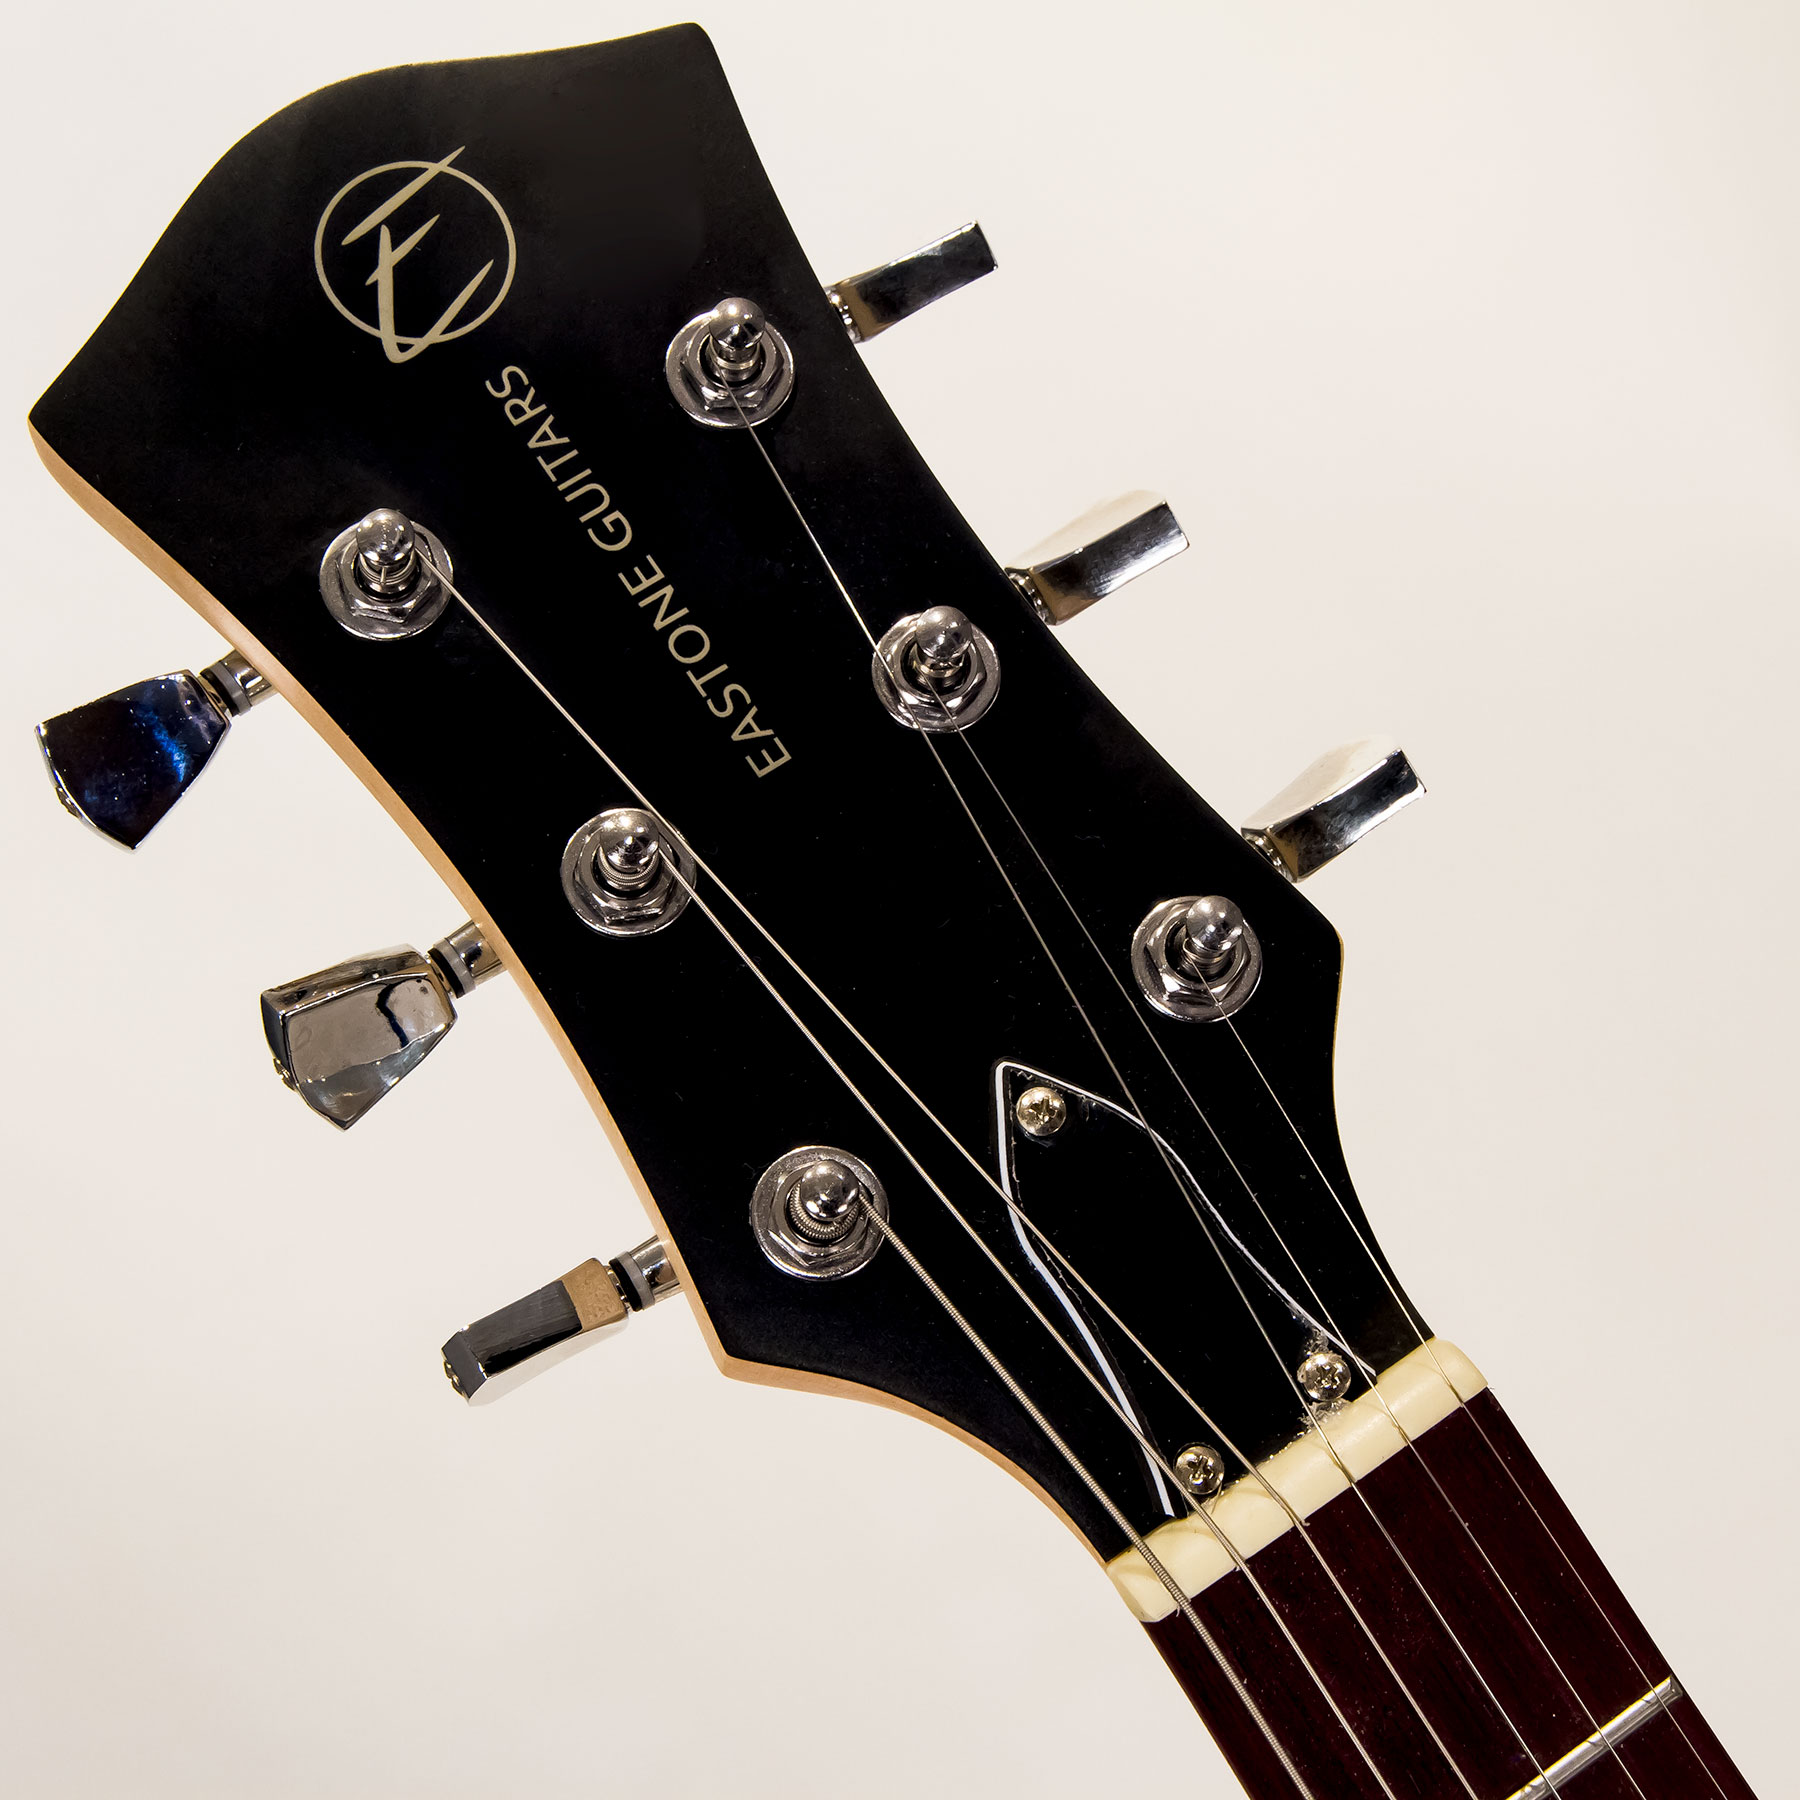 Eastone Lpl70 Hh Ht Pur - Black Satin - Guitarra eléctrica de corte único. - Variation 4